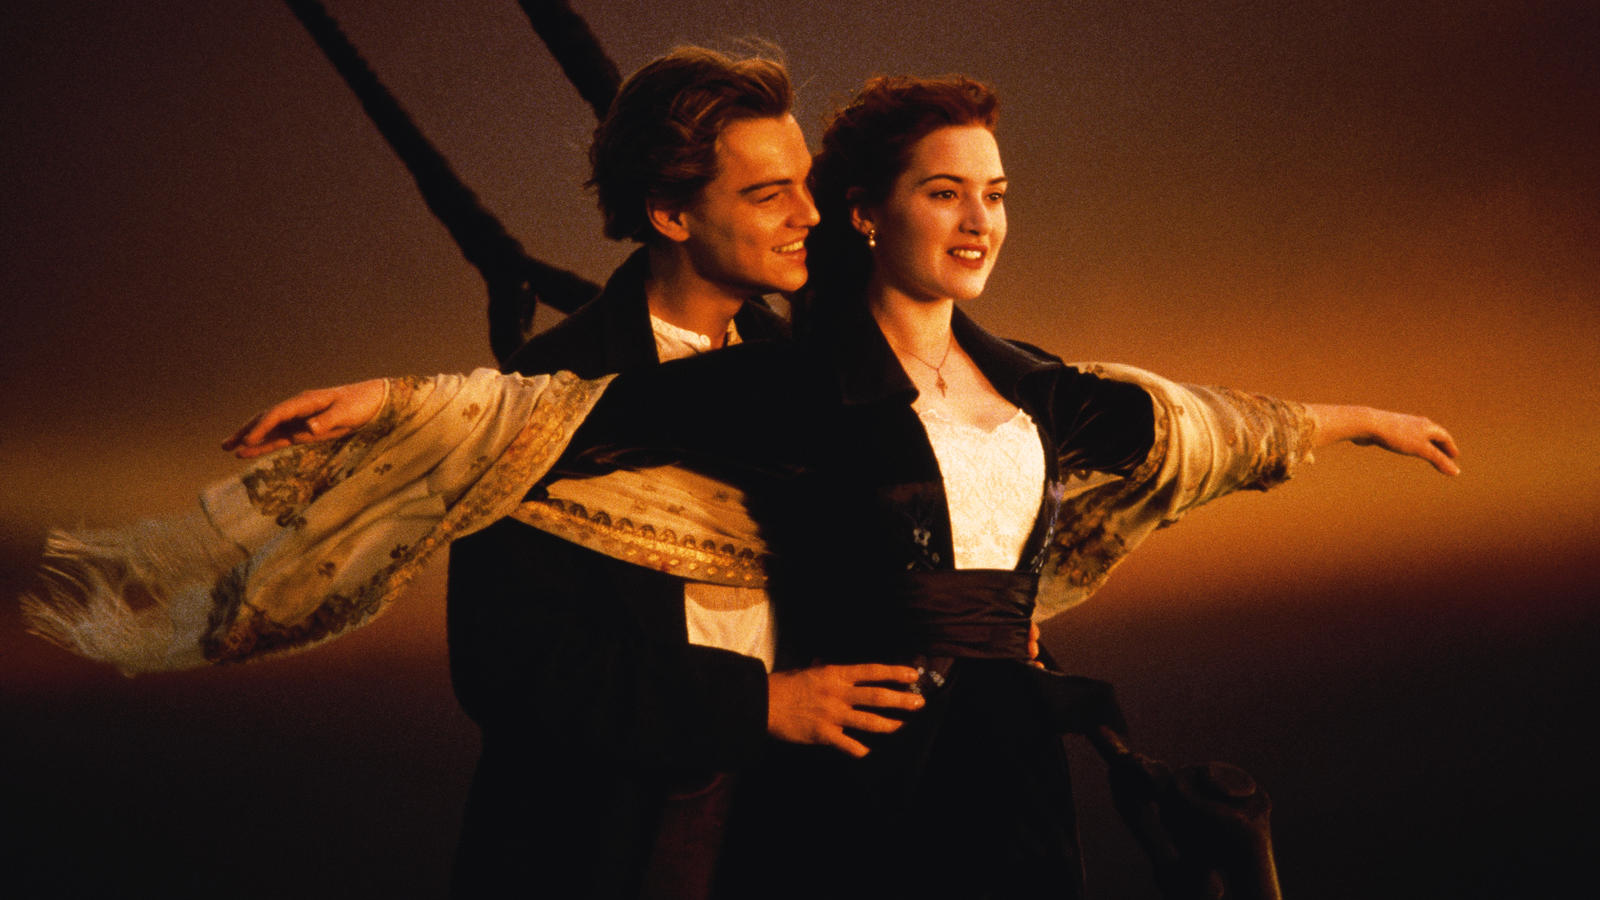 Gerade als Rose (Kate Winslet) den Entschluss fasst, in Amerika mit Jack (Leonardo DiCaprio) von Bord zu gehen, kollidiert die Titanic mit einem Eisberg und beginnt zu sinken...